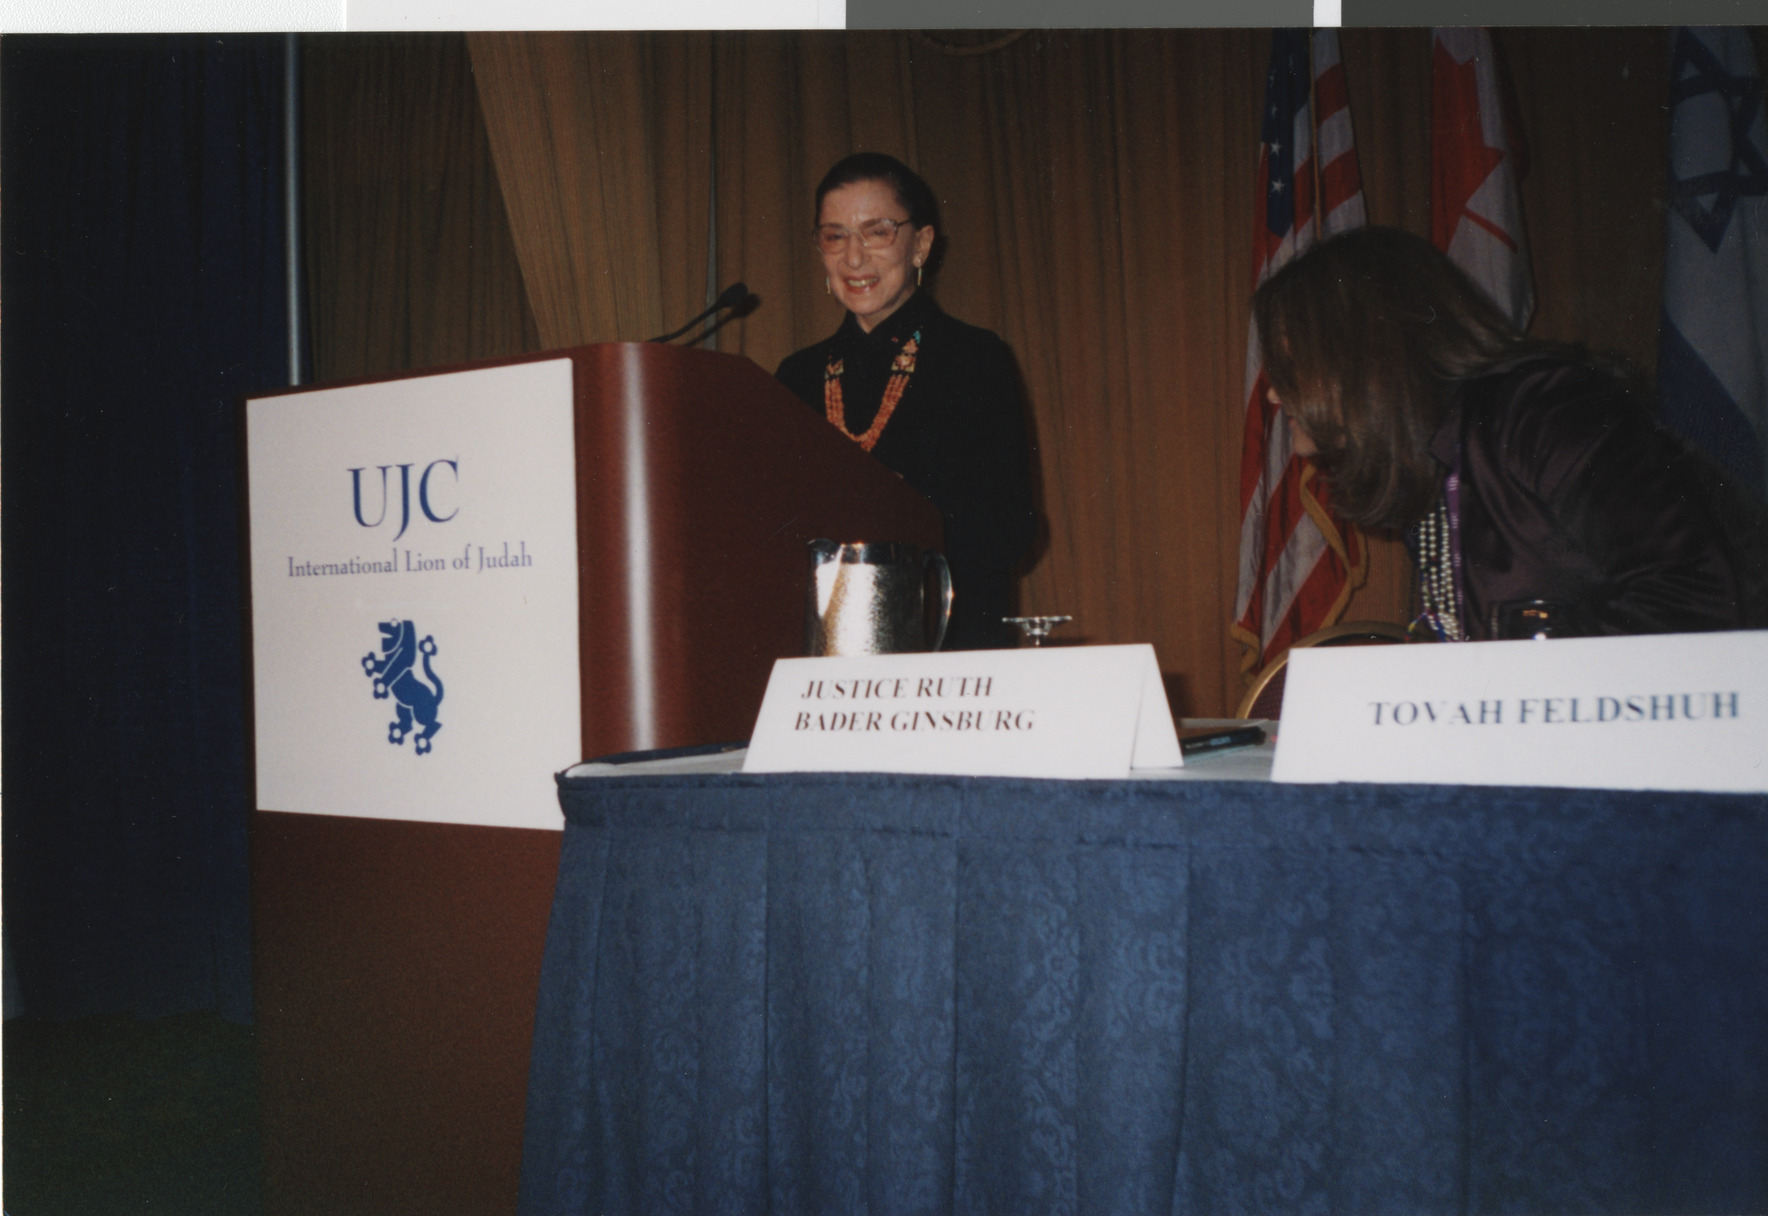 Photograph of Justice Ruth Bader Ginsberg at podium